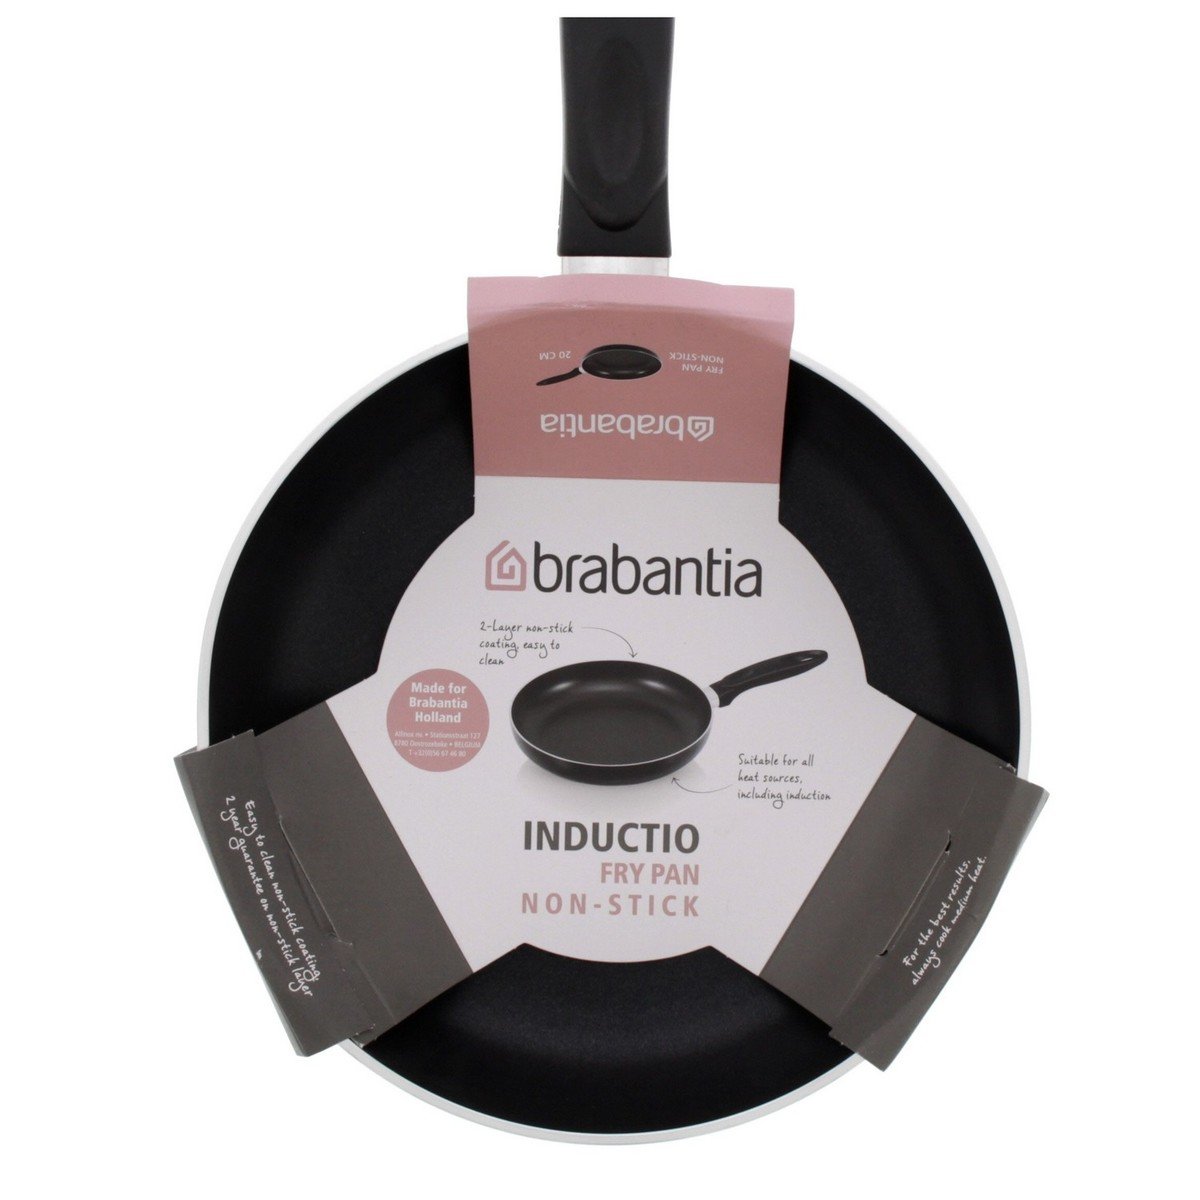 Brabantia Non-Stick Fry Pan, 28 cm, BR10919